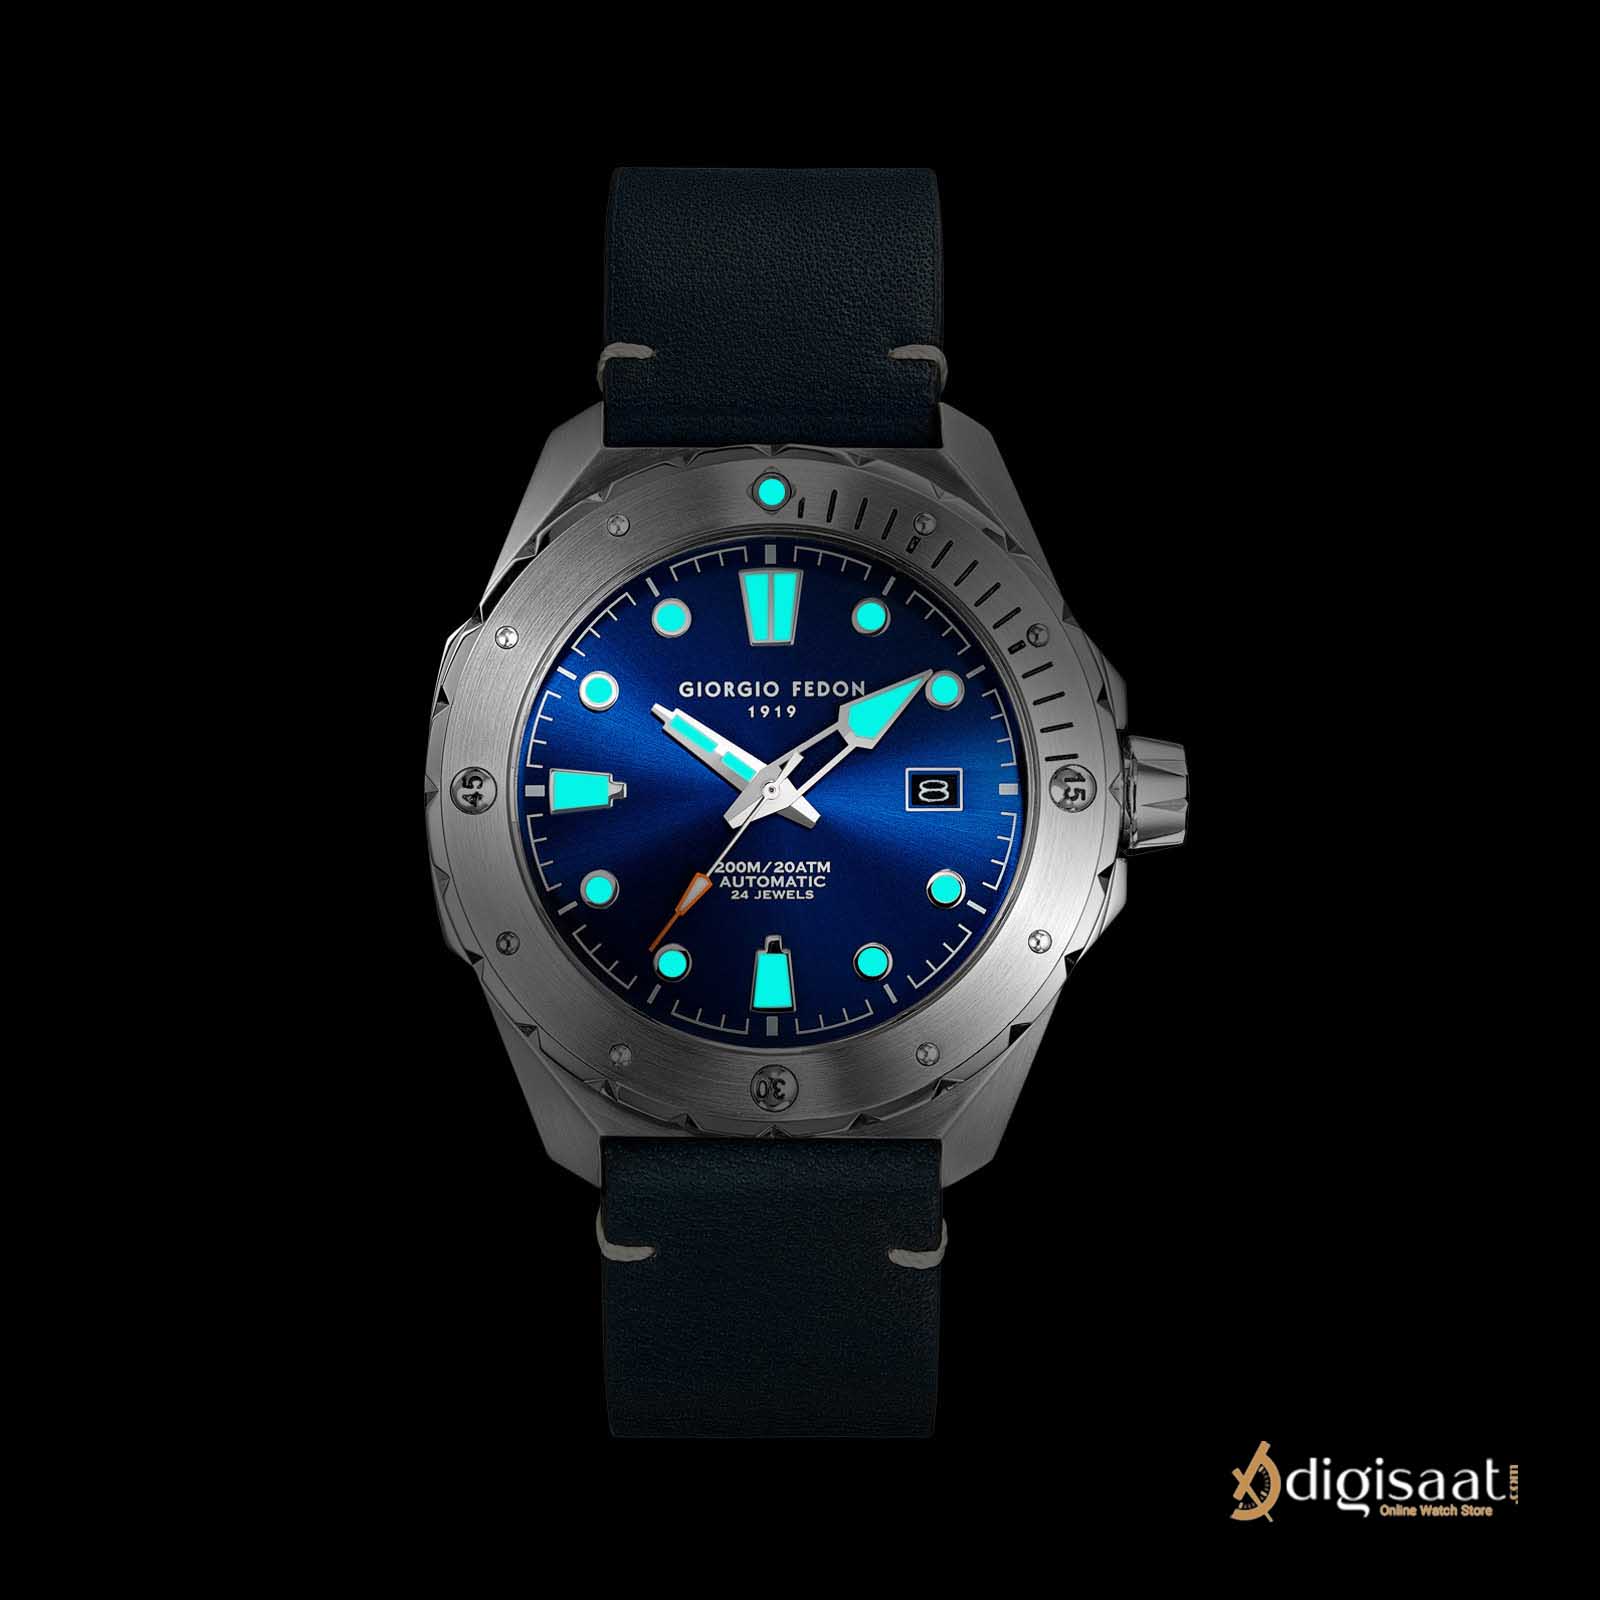 ساعت مچی مردانه جیورجیو فدون مدل GIORGIO FEDON OCEAN WALKER GFCJ003